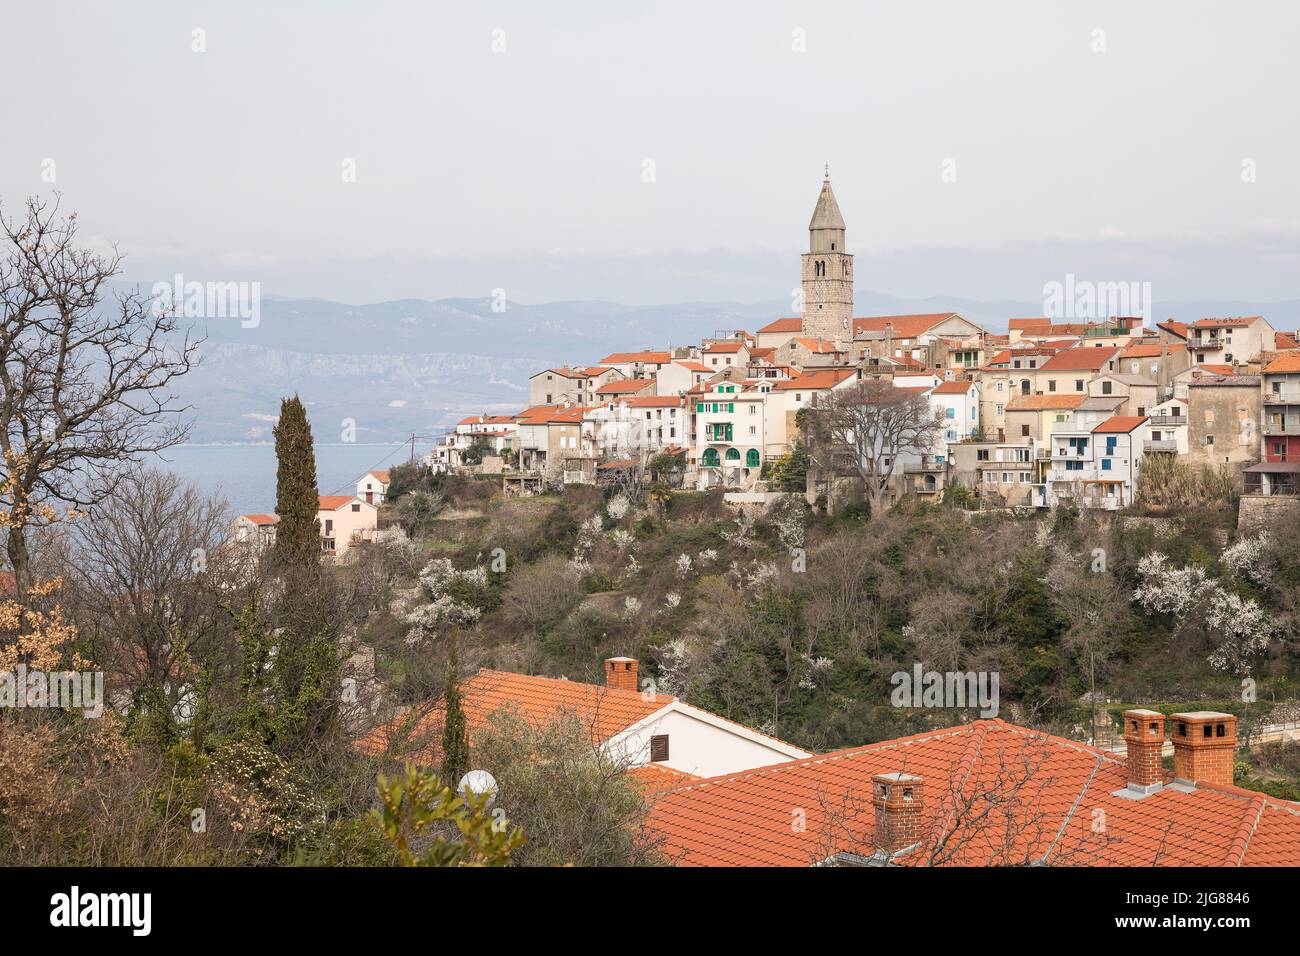 View of the old town of Vrbnik, Adriatic coast, Krk Island, Kvarner Bay, Primorje-Gorski kotar County, Croatia, Europe Stock Photo